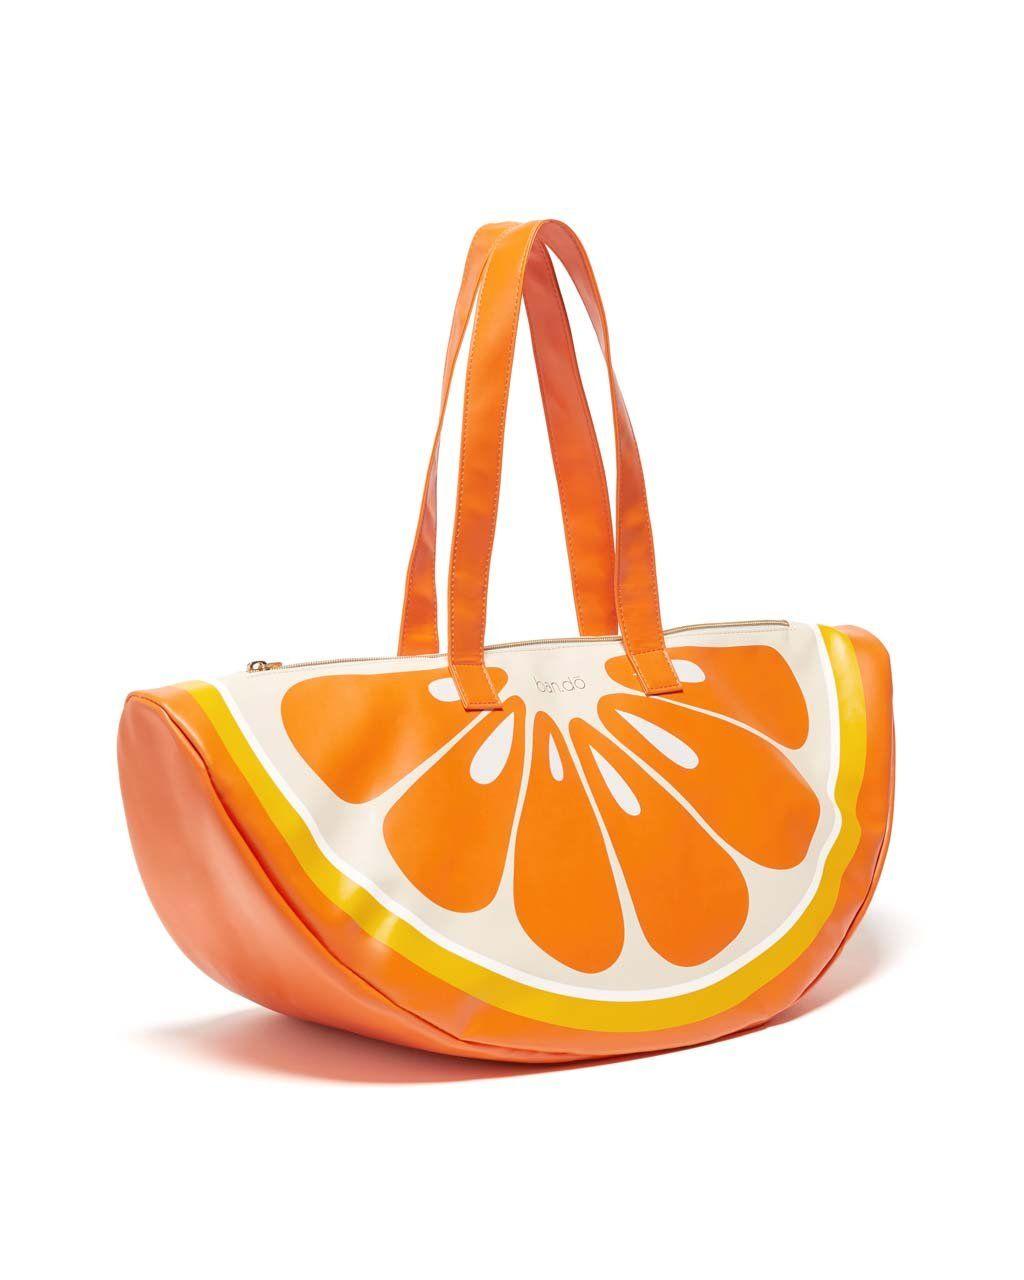 Super Chill Logo - Super Chill Cooler Bag - Orange by ban.do - cooler bag - ban.do